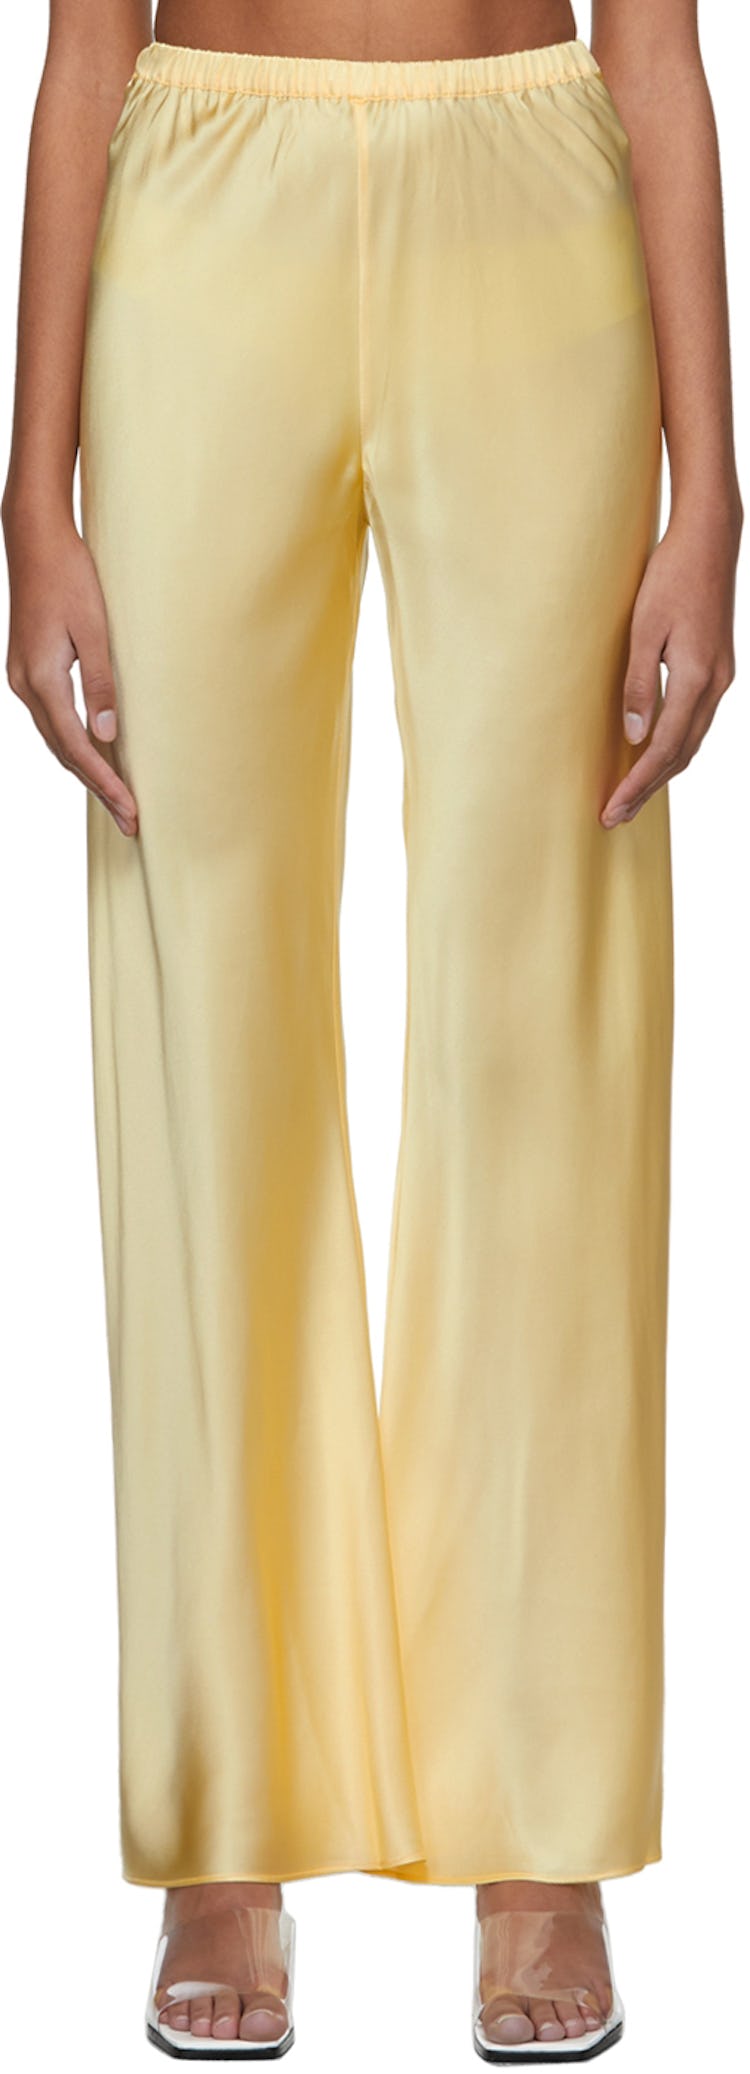 Yellow Silk Bias Cut Lounge Pants: image 1